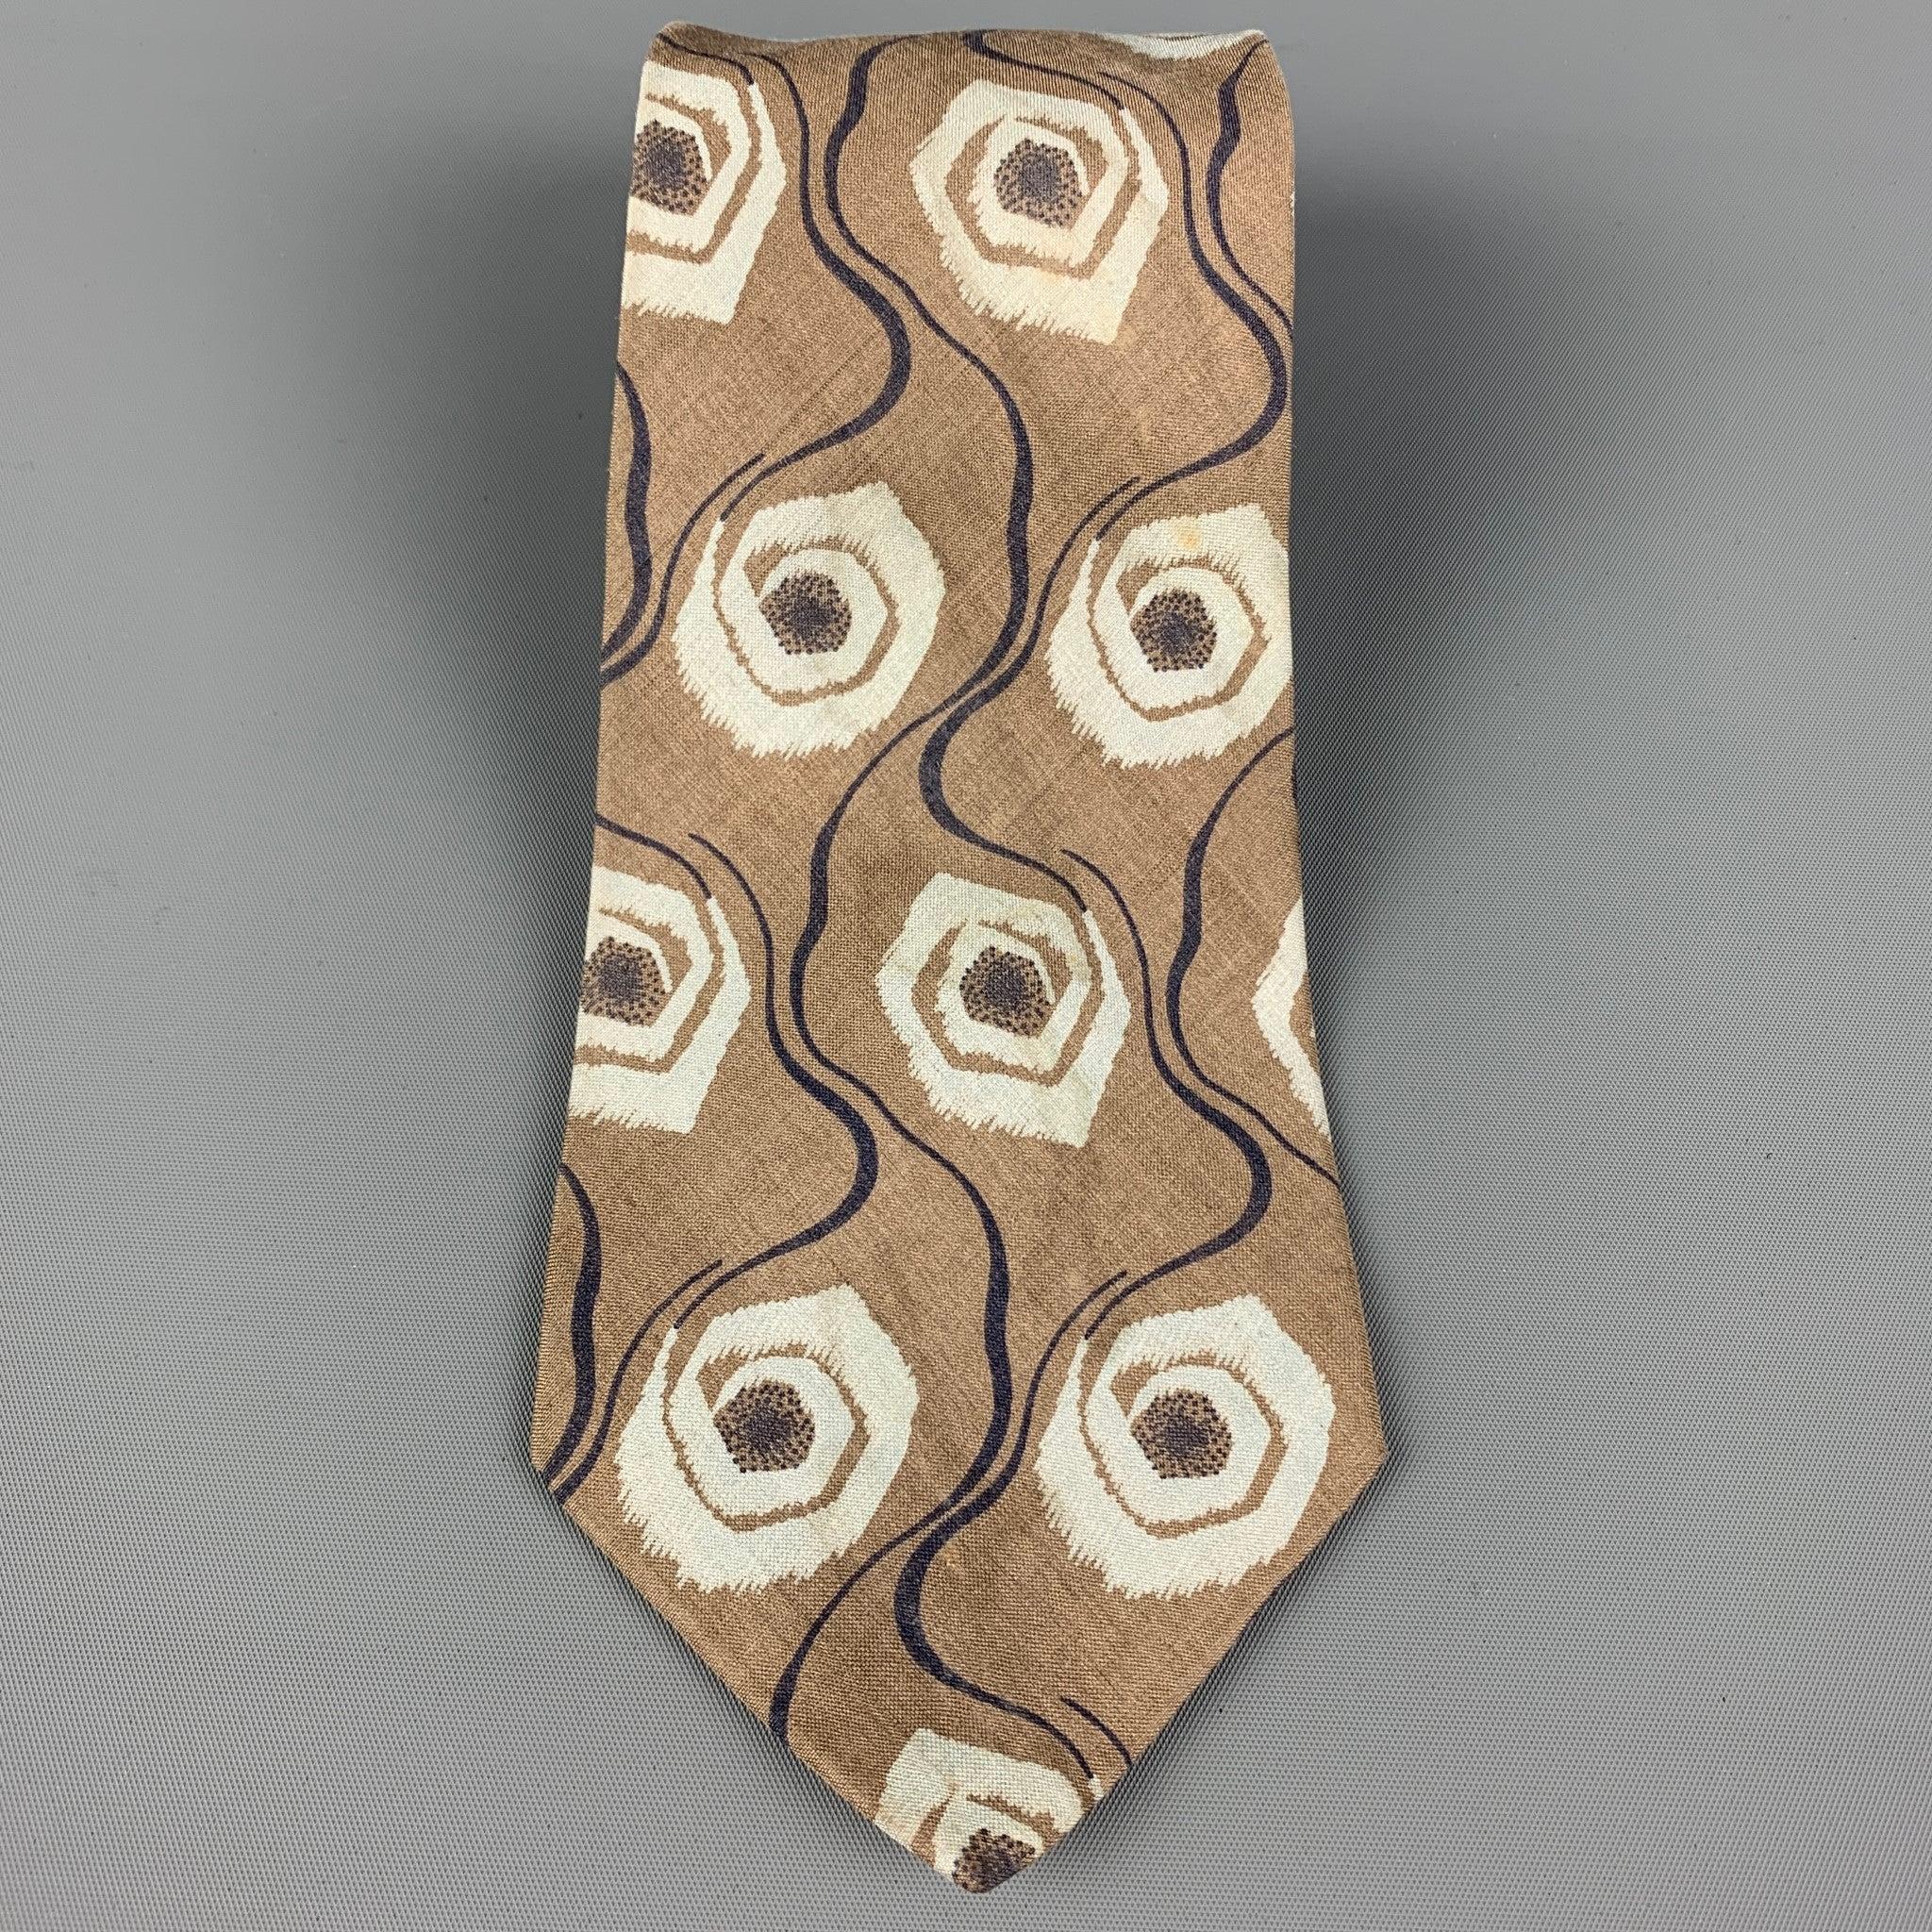 GIORGIO ARMANI
La cravate est en sergé de soie kaki avec un imprimé abstrait. Fabriquées en Italie. Très bon état d'origine. 

Mesures : 
  Largeur : 3.5 Longueur : 55 pouces 
  
  
 
Référence : 120056
Catégorie : Cravate
Plus de détails
   